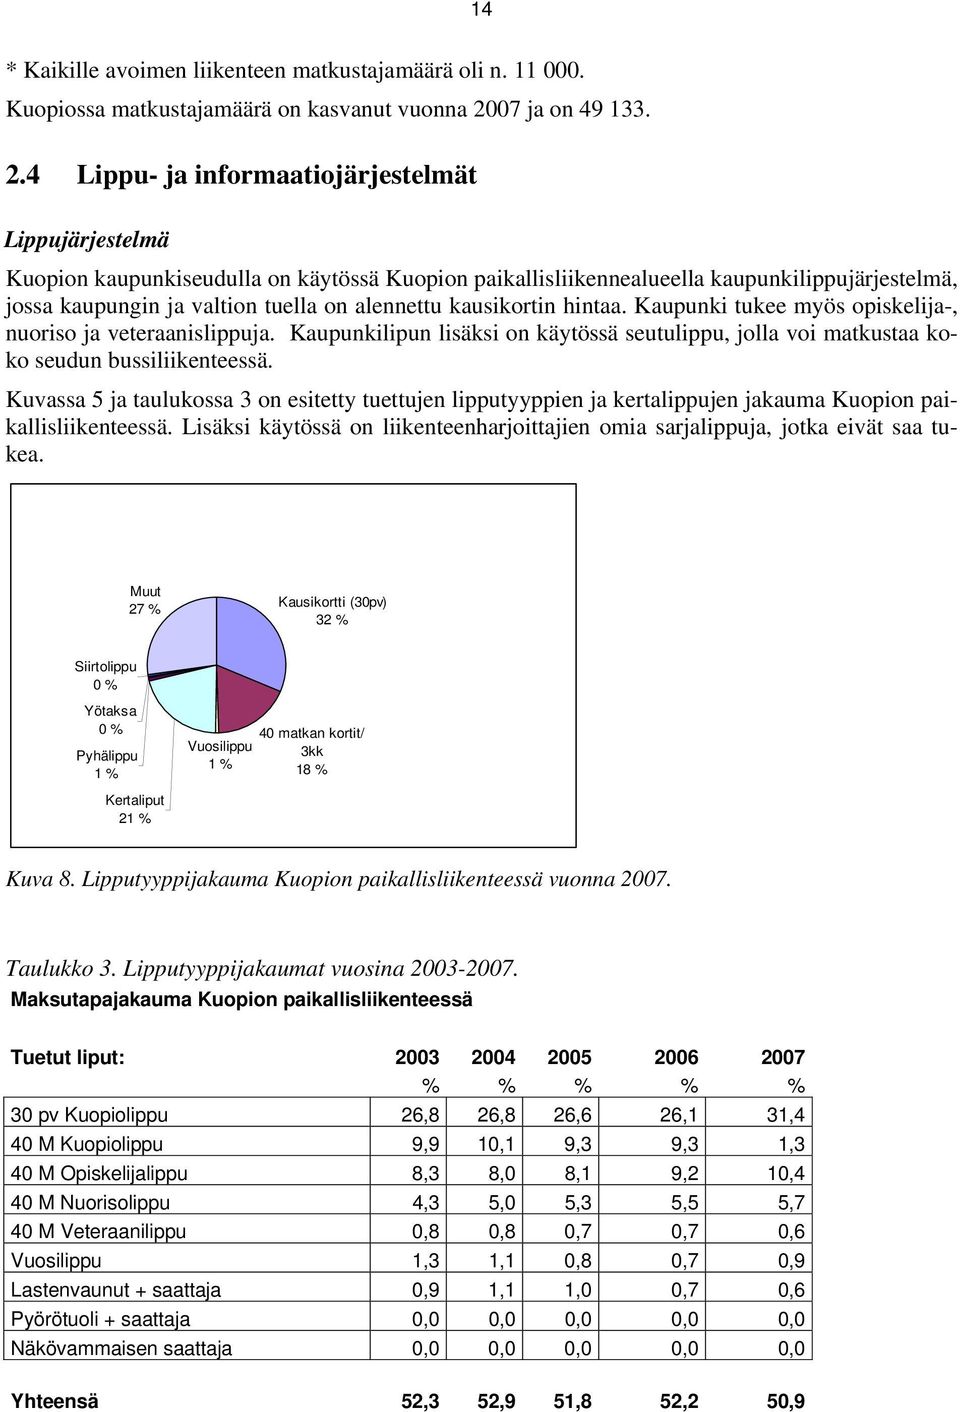 4 Lippu- ja informaatiojärjestelmät Lippujärjestelmä Kuopion kaupunkiseudulla on käytössä Kuopion paikallisliikennealueella kaupunkilippujärjestelmä, jossa kaupungin ja valtion tuella on alennettu